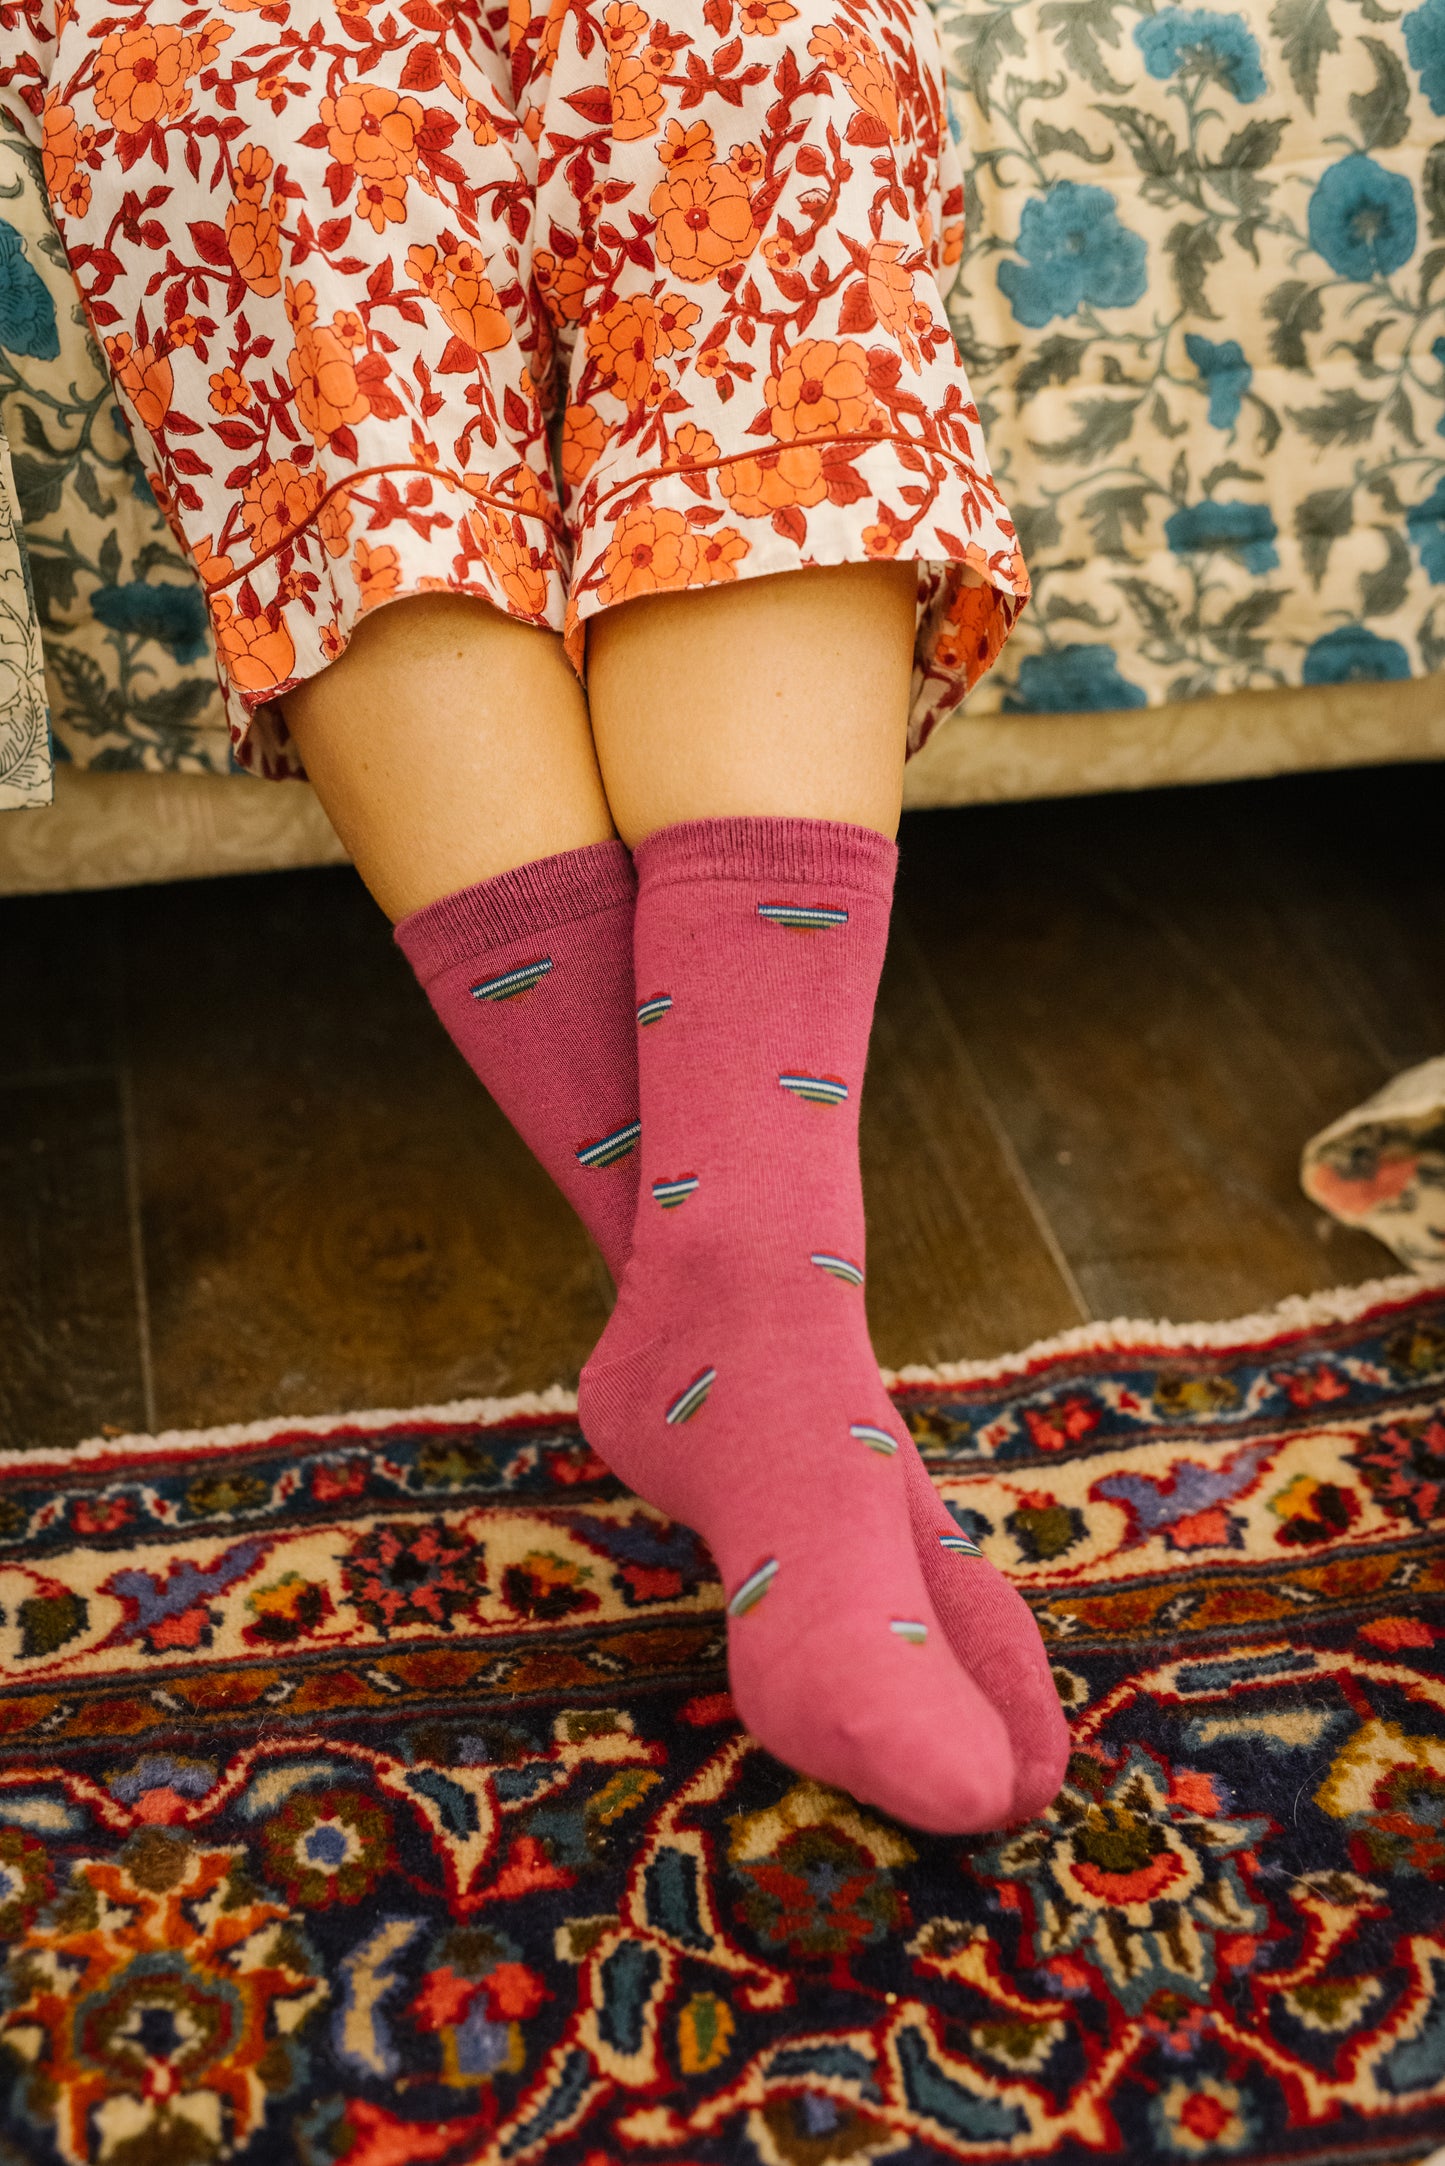 Cretia Heart Stripe Socks in Violet Pink